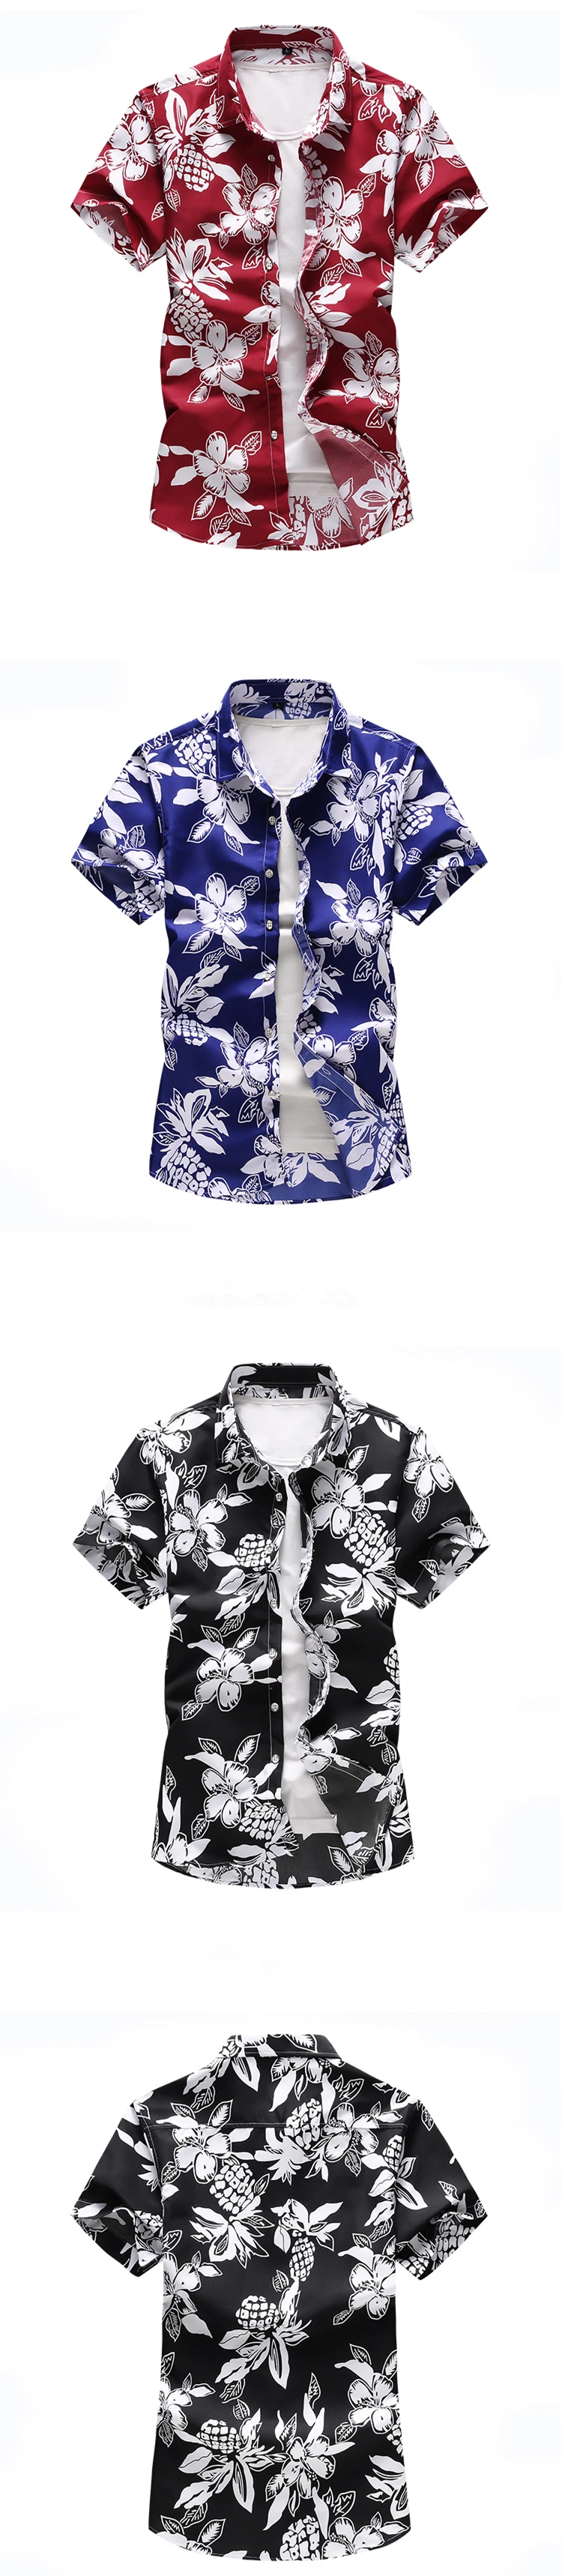 17 цветов, летние пляжные Гавайские мужские рубашки с коротким рукавом, футболка с цветочным принтом, праздничные рубашки Camisa Hawaiana, брендовые рубашки 6XL 7XL